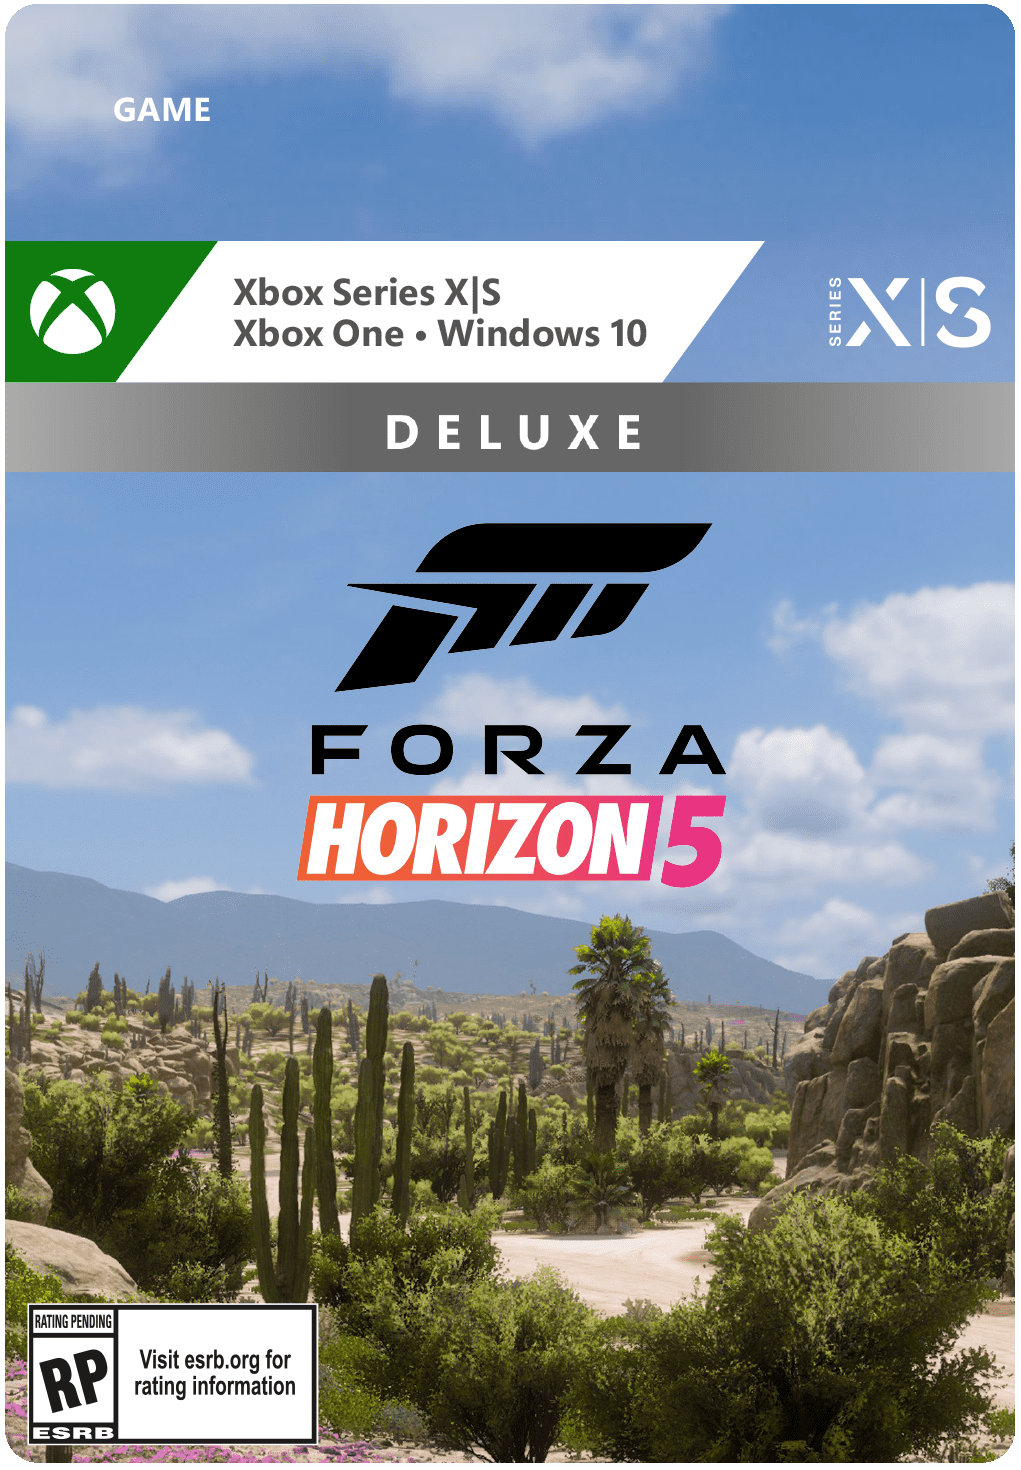 Forza Horizon Gameplay PC Version 